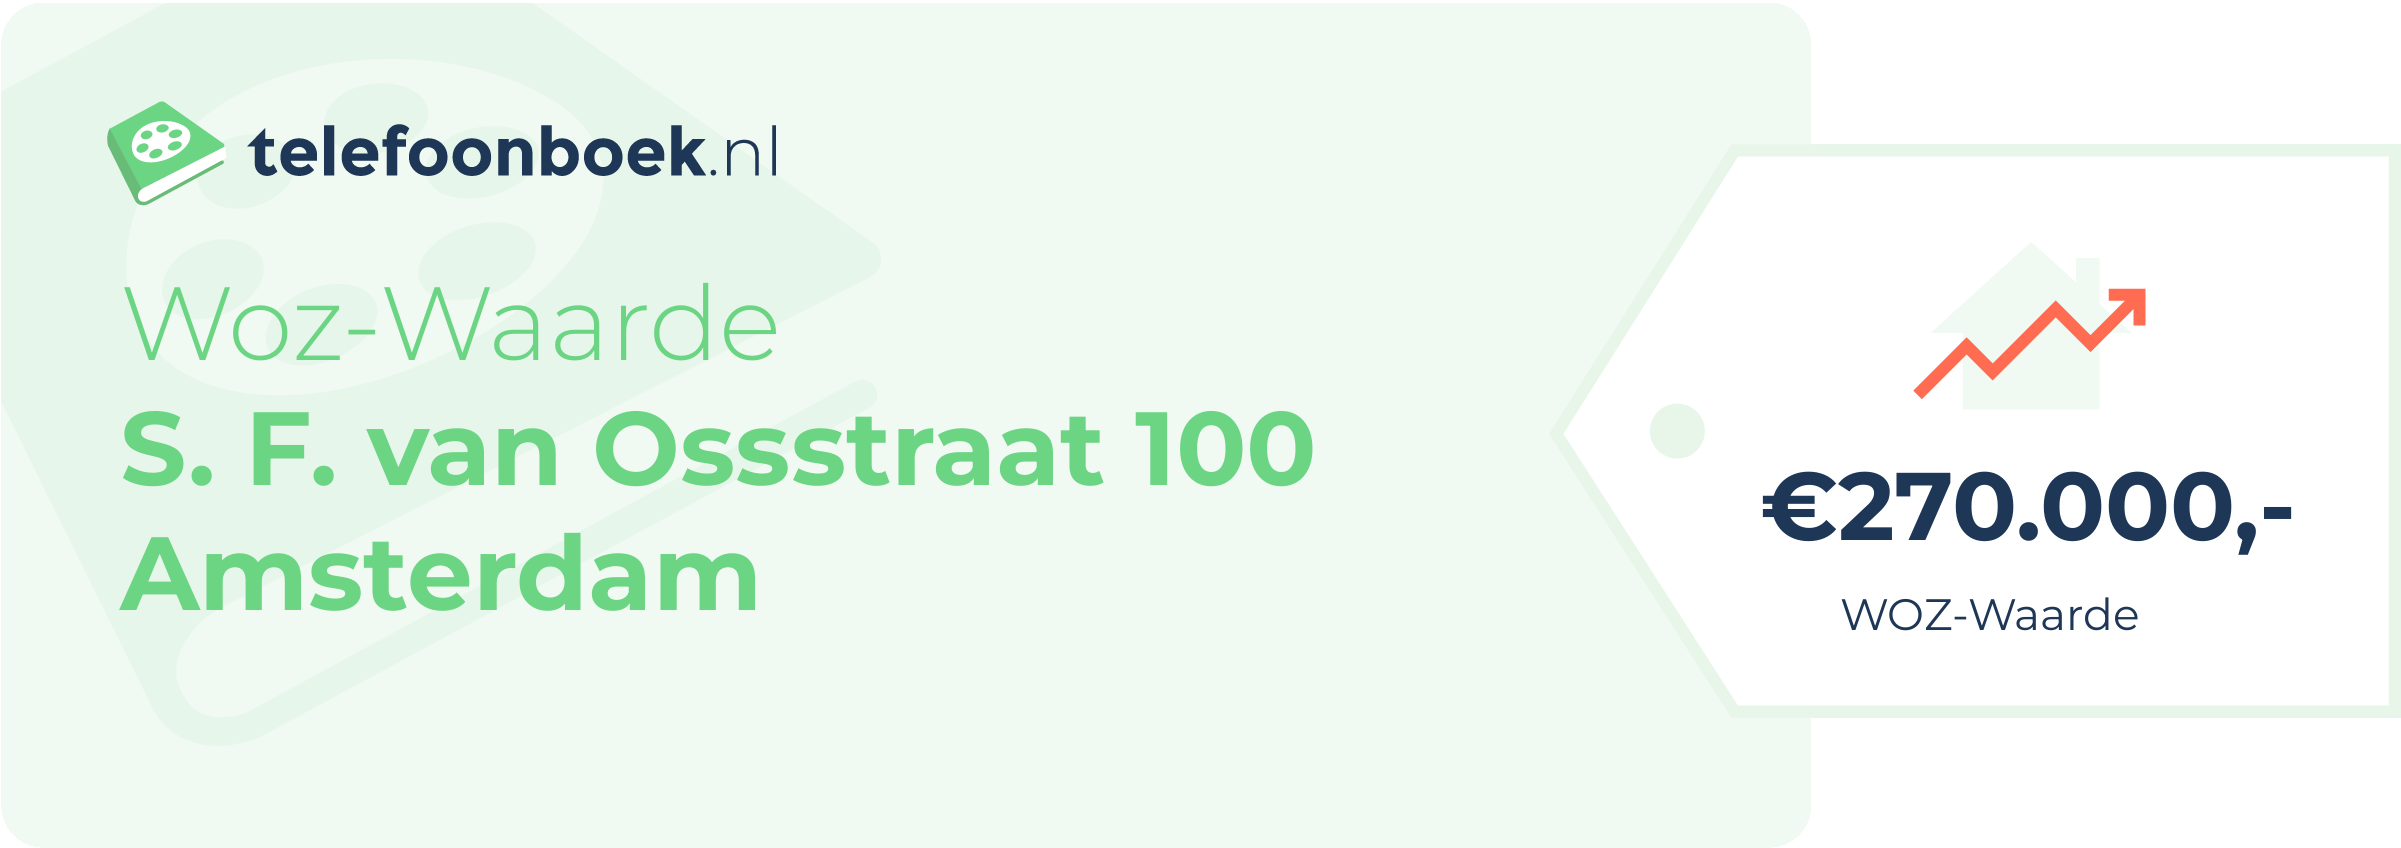 WOZ-waarde S. F. Van Ossstraat 100 Amsterdam